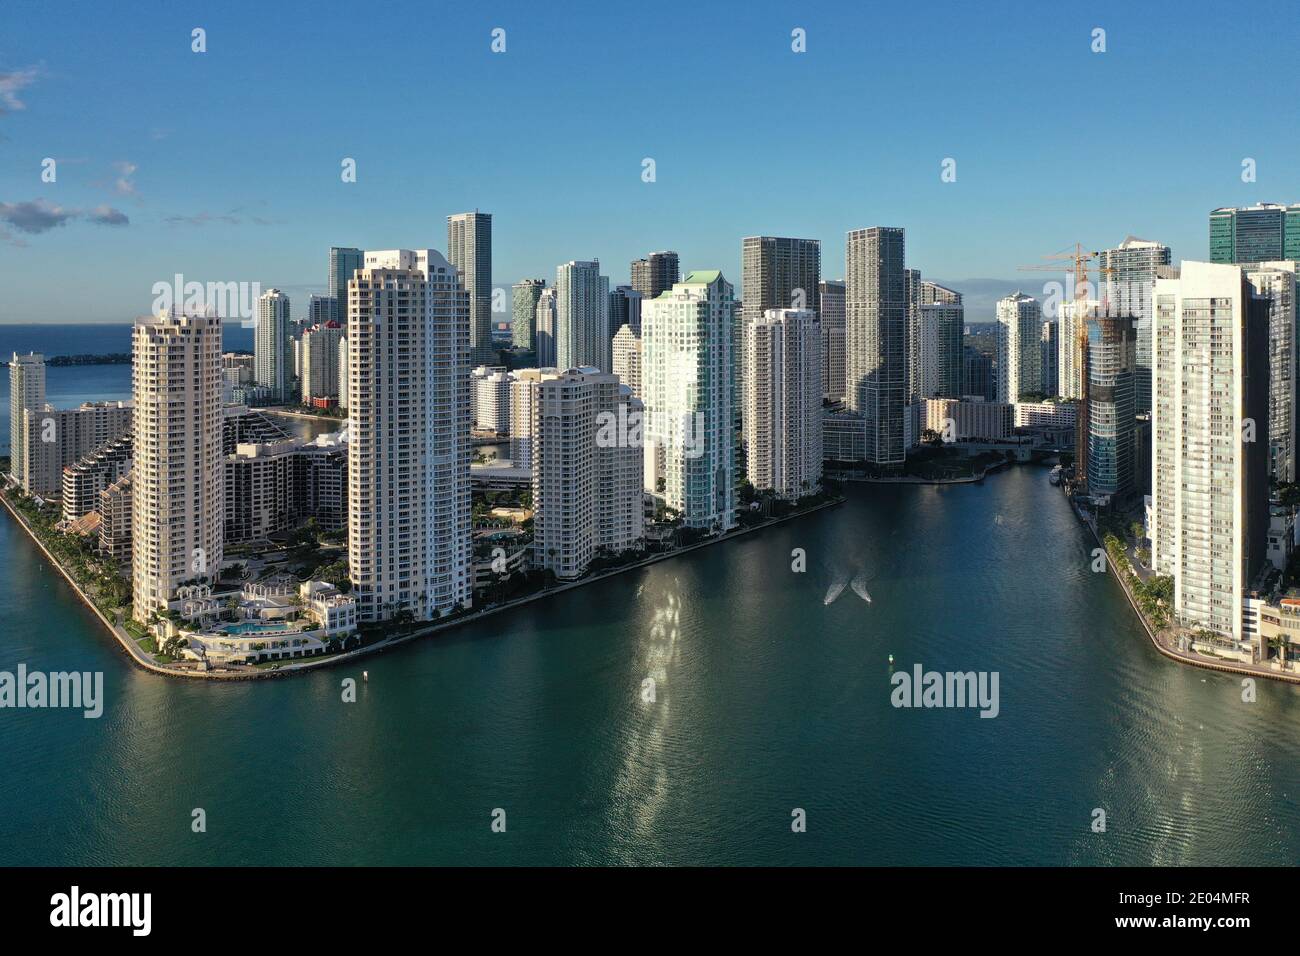 Miami, Floride - 27 décembre 2020 - vue aérienne de la ville de Miami et entrée sur la rivière Miami le matin ensoleillé de l'hiver. Banque D'Images